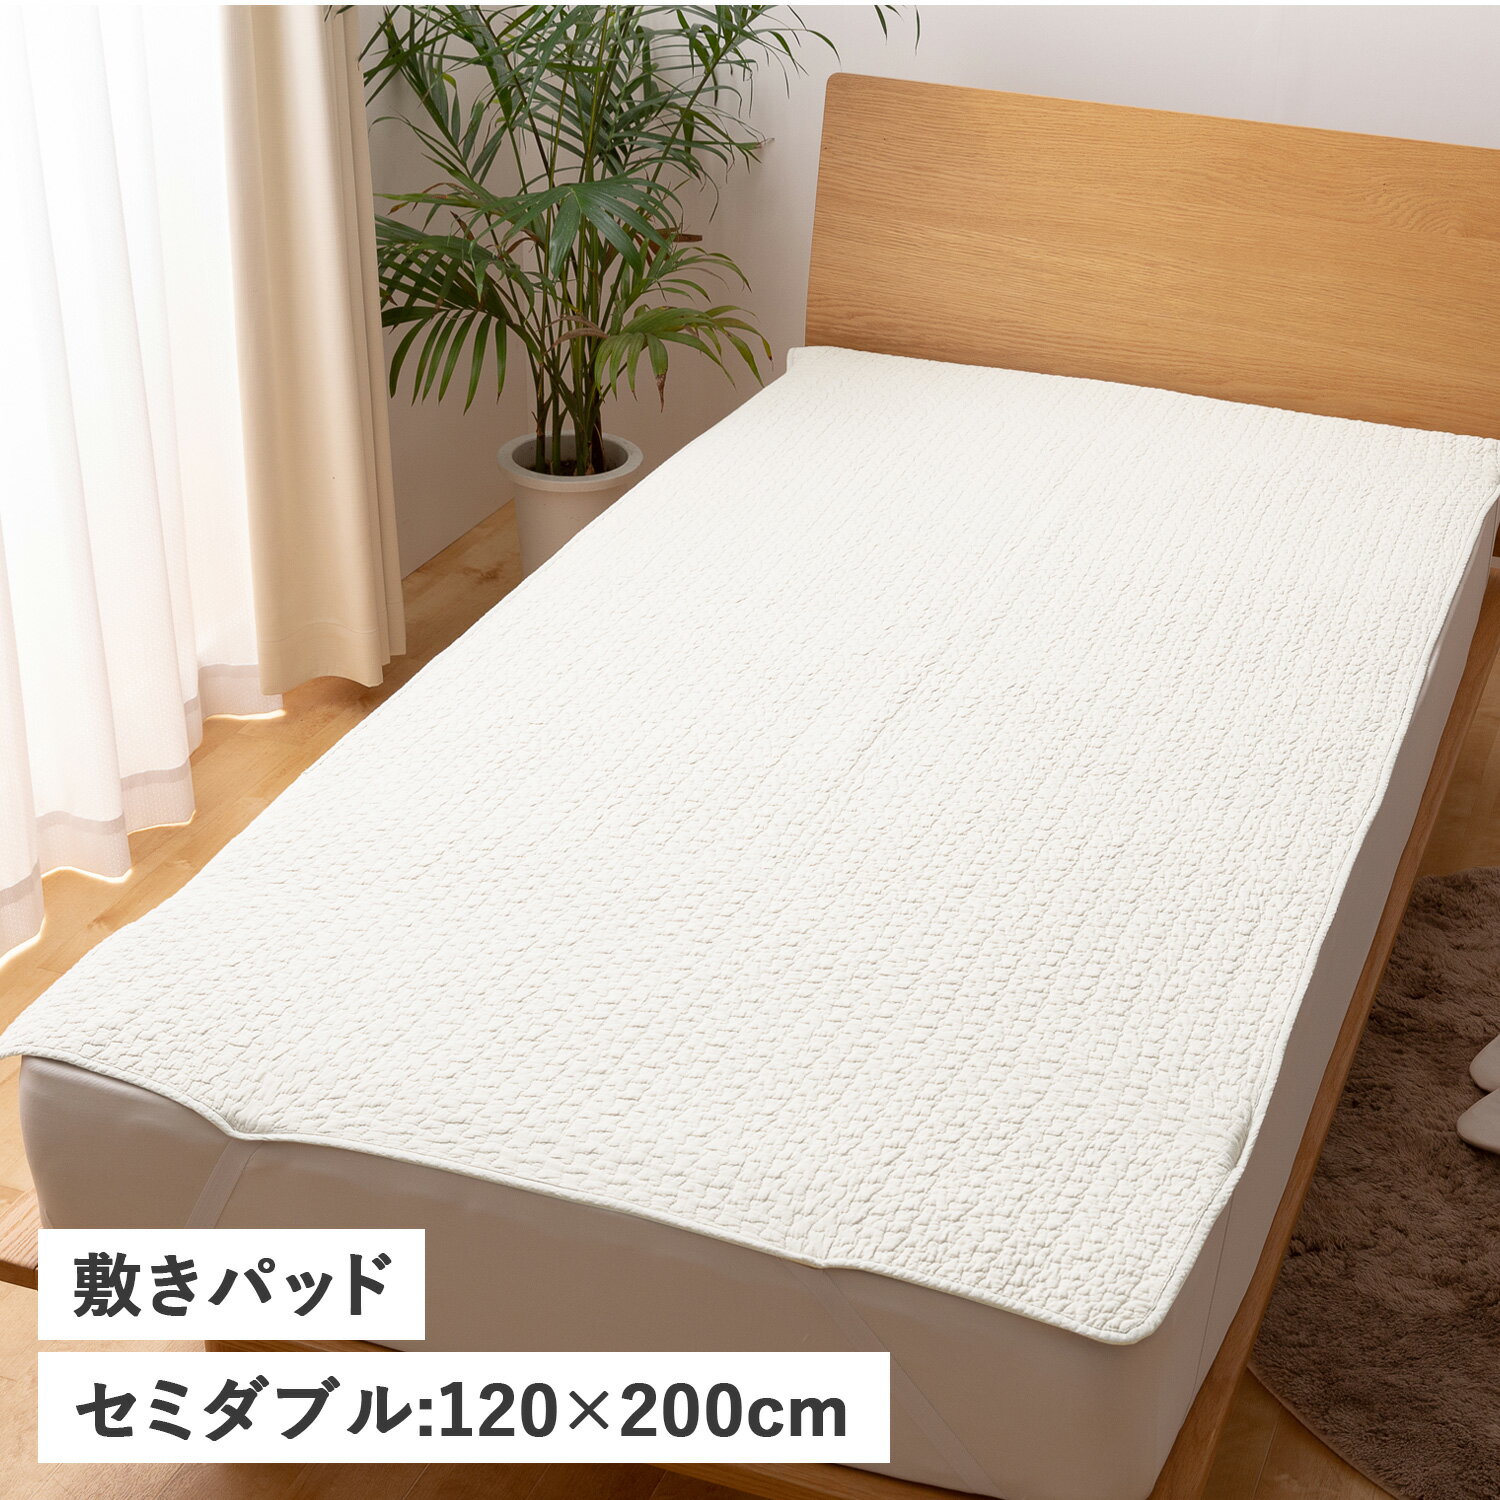 mofua BED PAD モフア 敷きパッド ベッドパッド ベッドシーツ セミダブル 120×200cm 綿100% 丸洗い CLOUD柄 3624